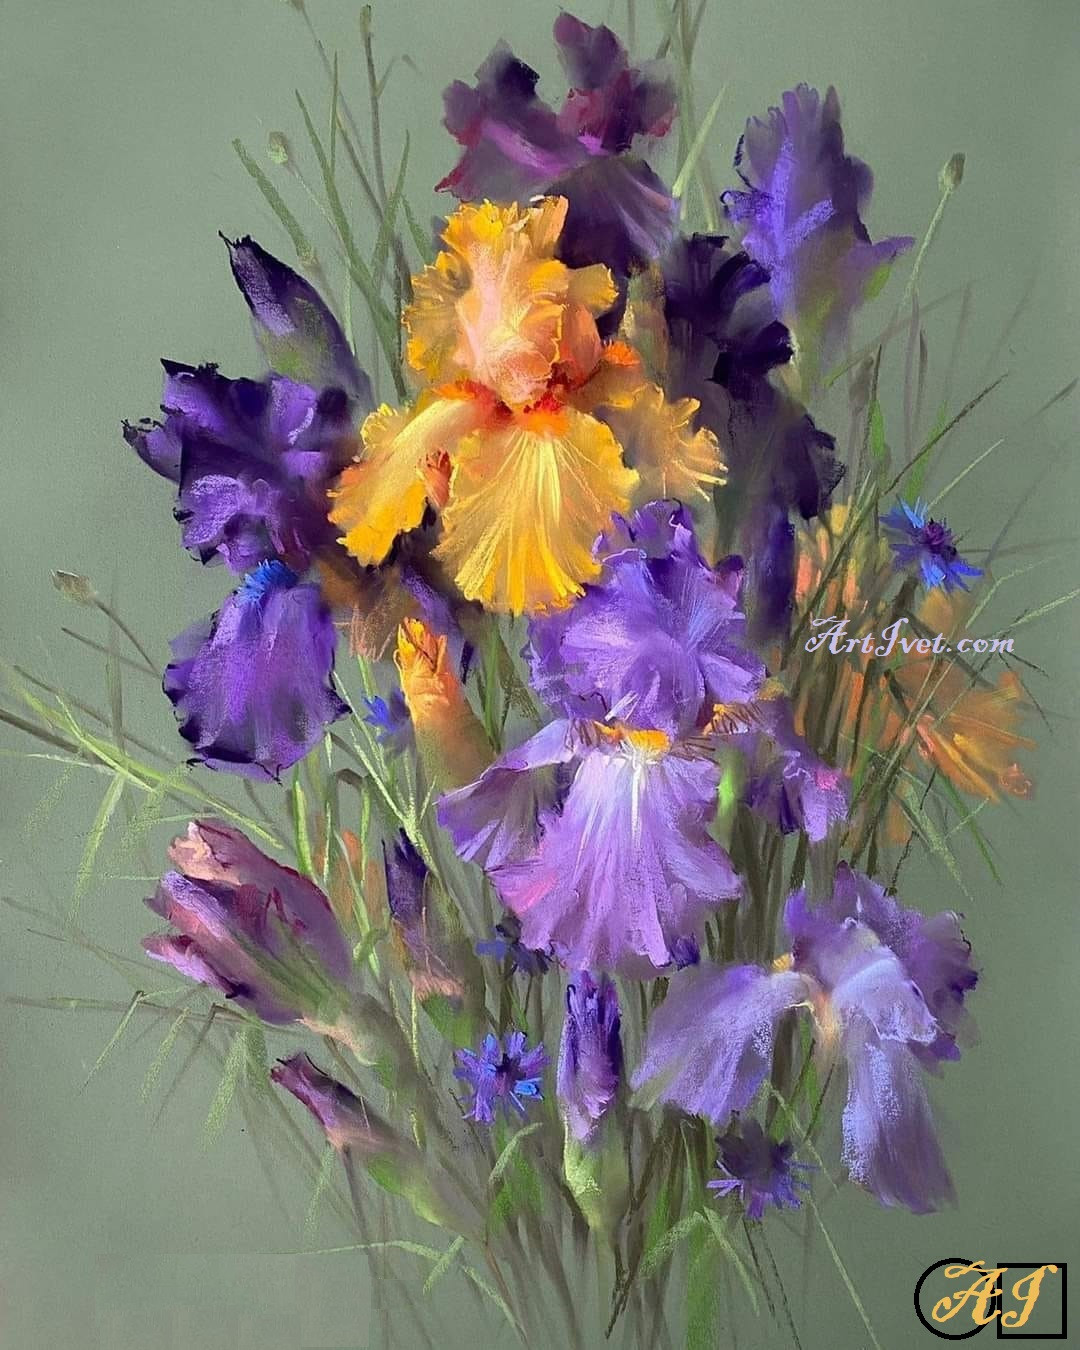 Goblen  de  diamante - Buchet cu Irisi in Violet si portocaliu: Dimensiuni si tip - 30x24 cm Margele Patrate